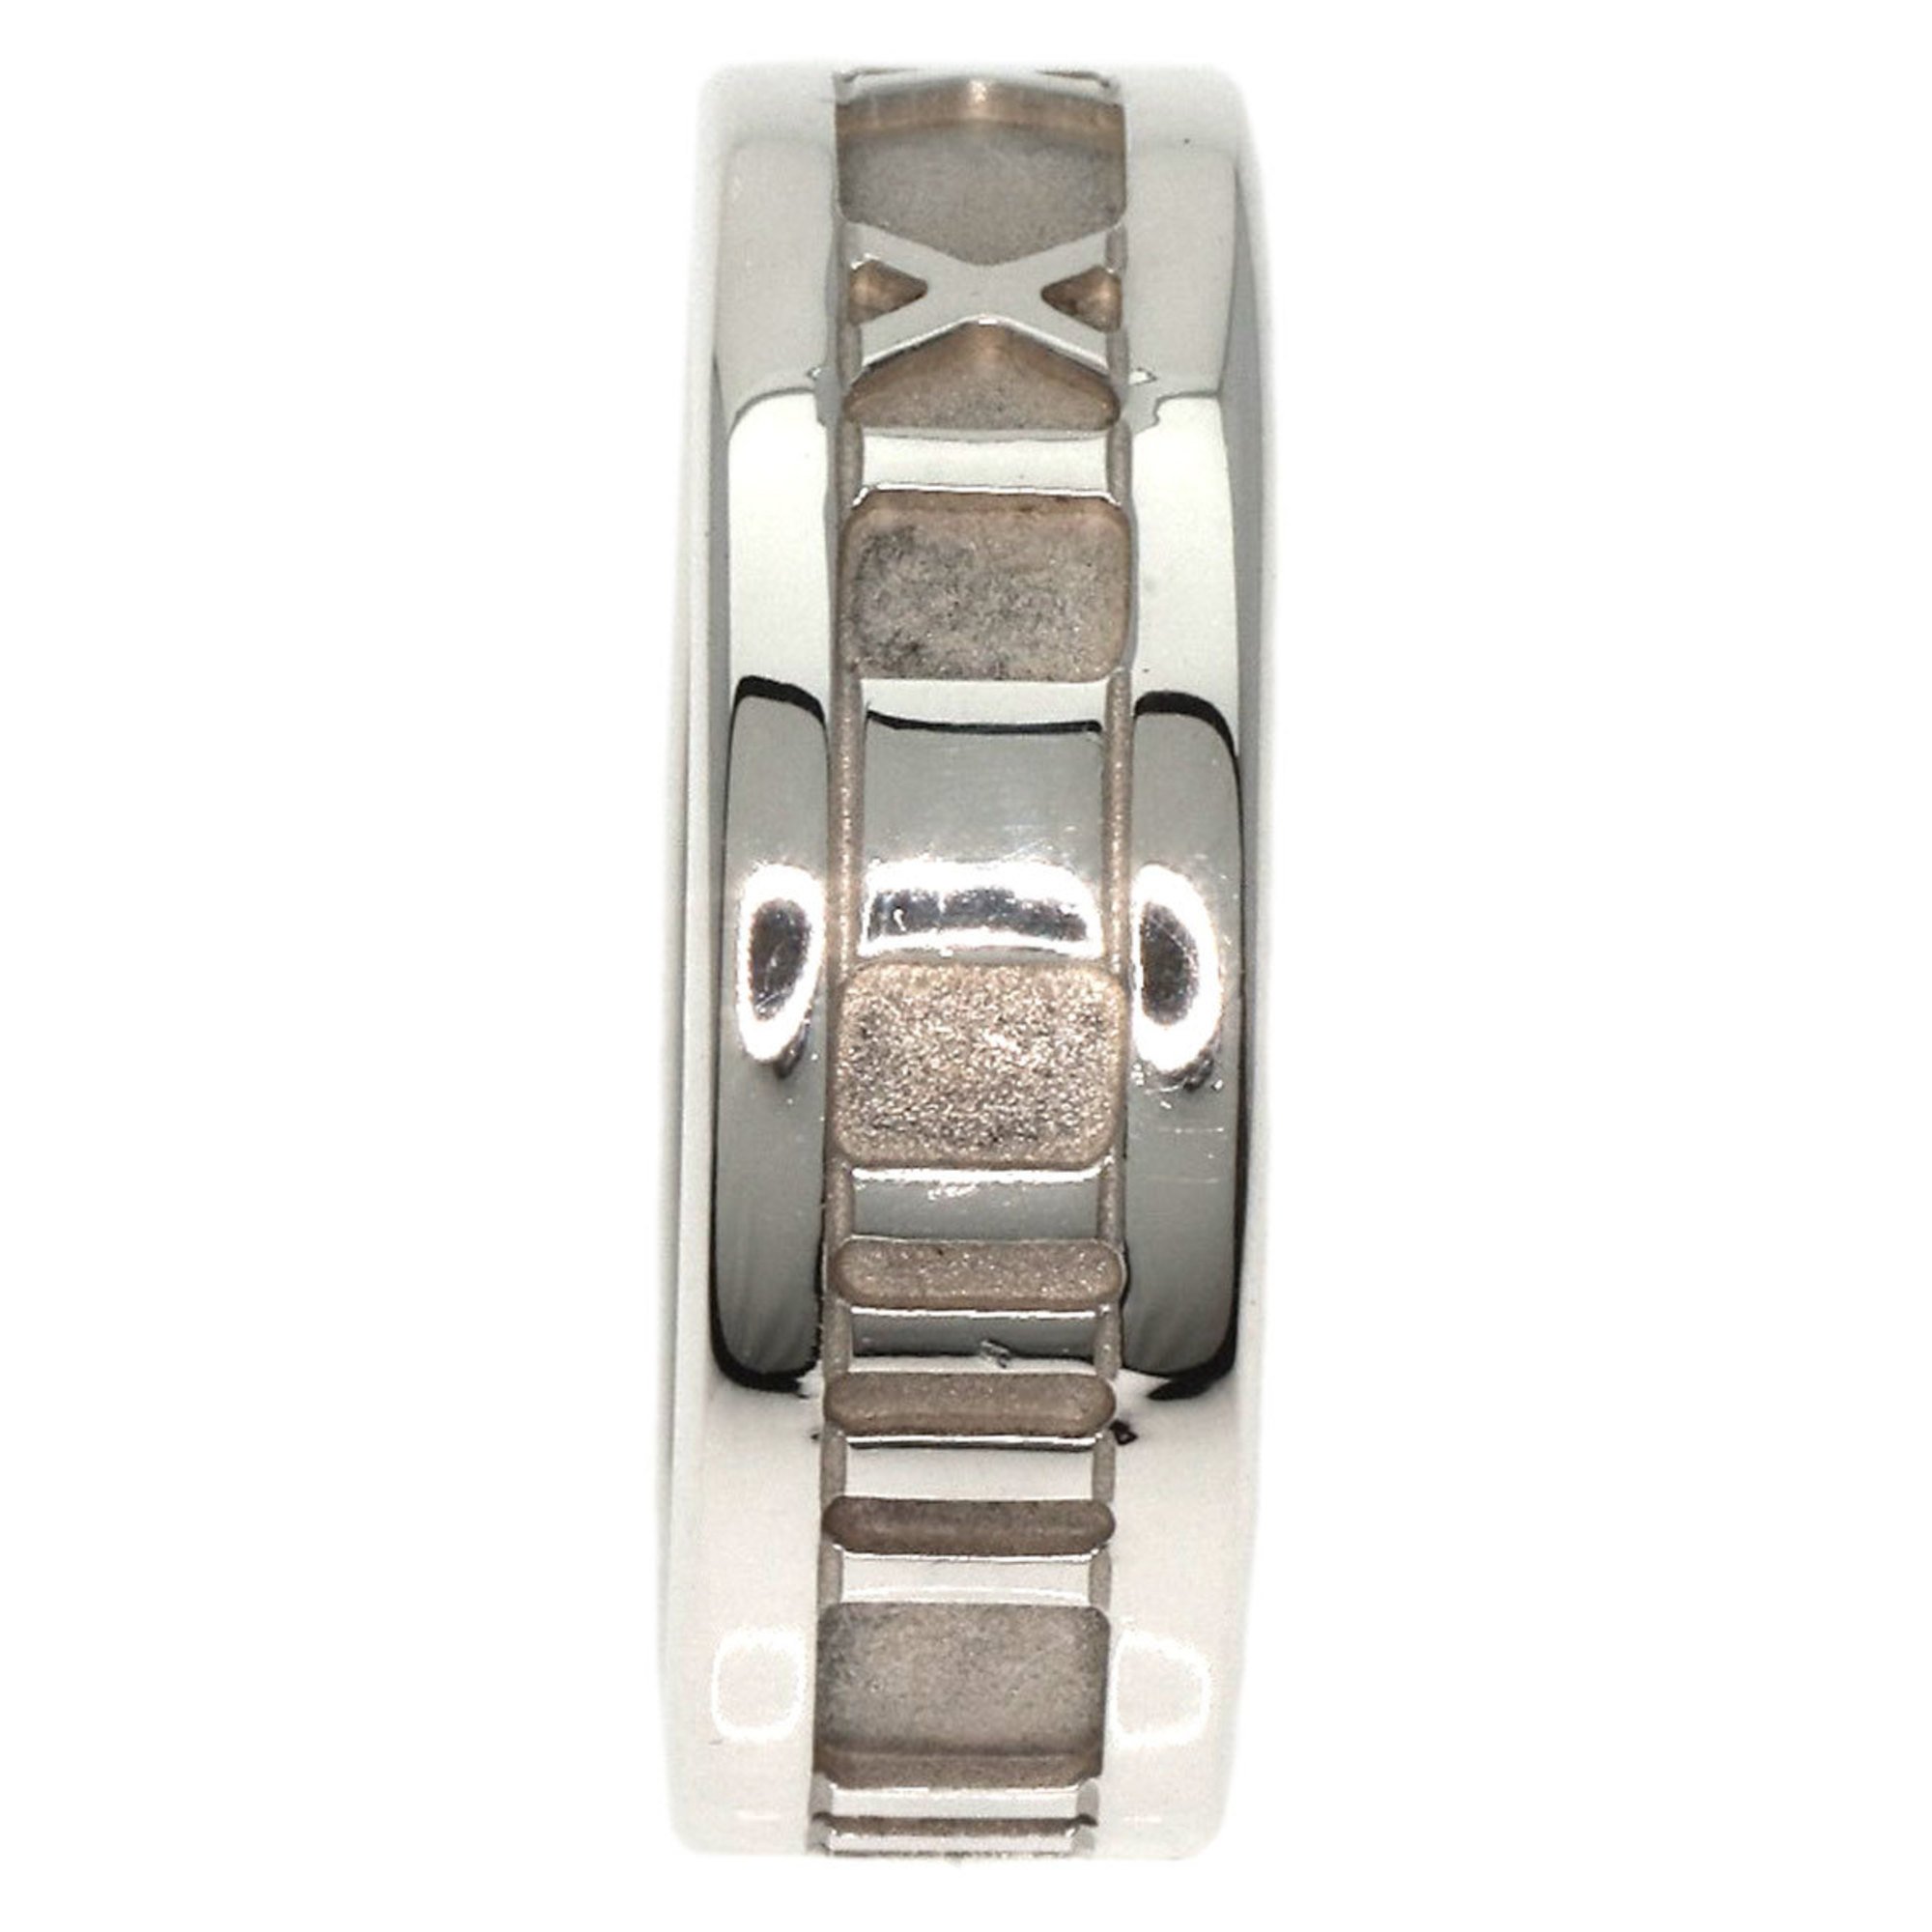 Tiffany Atlas Ring, Silver, Women's